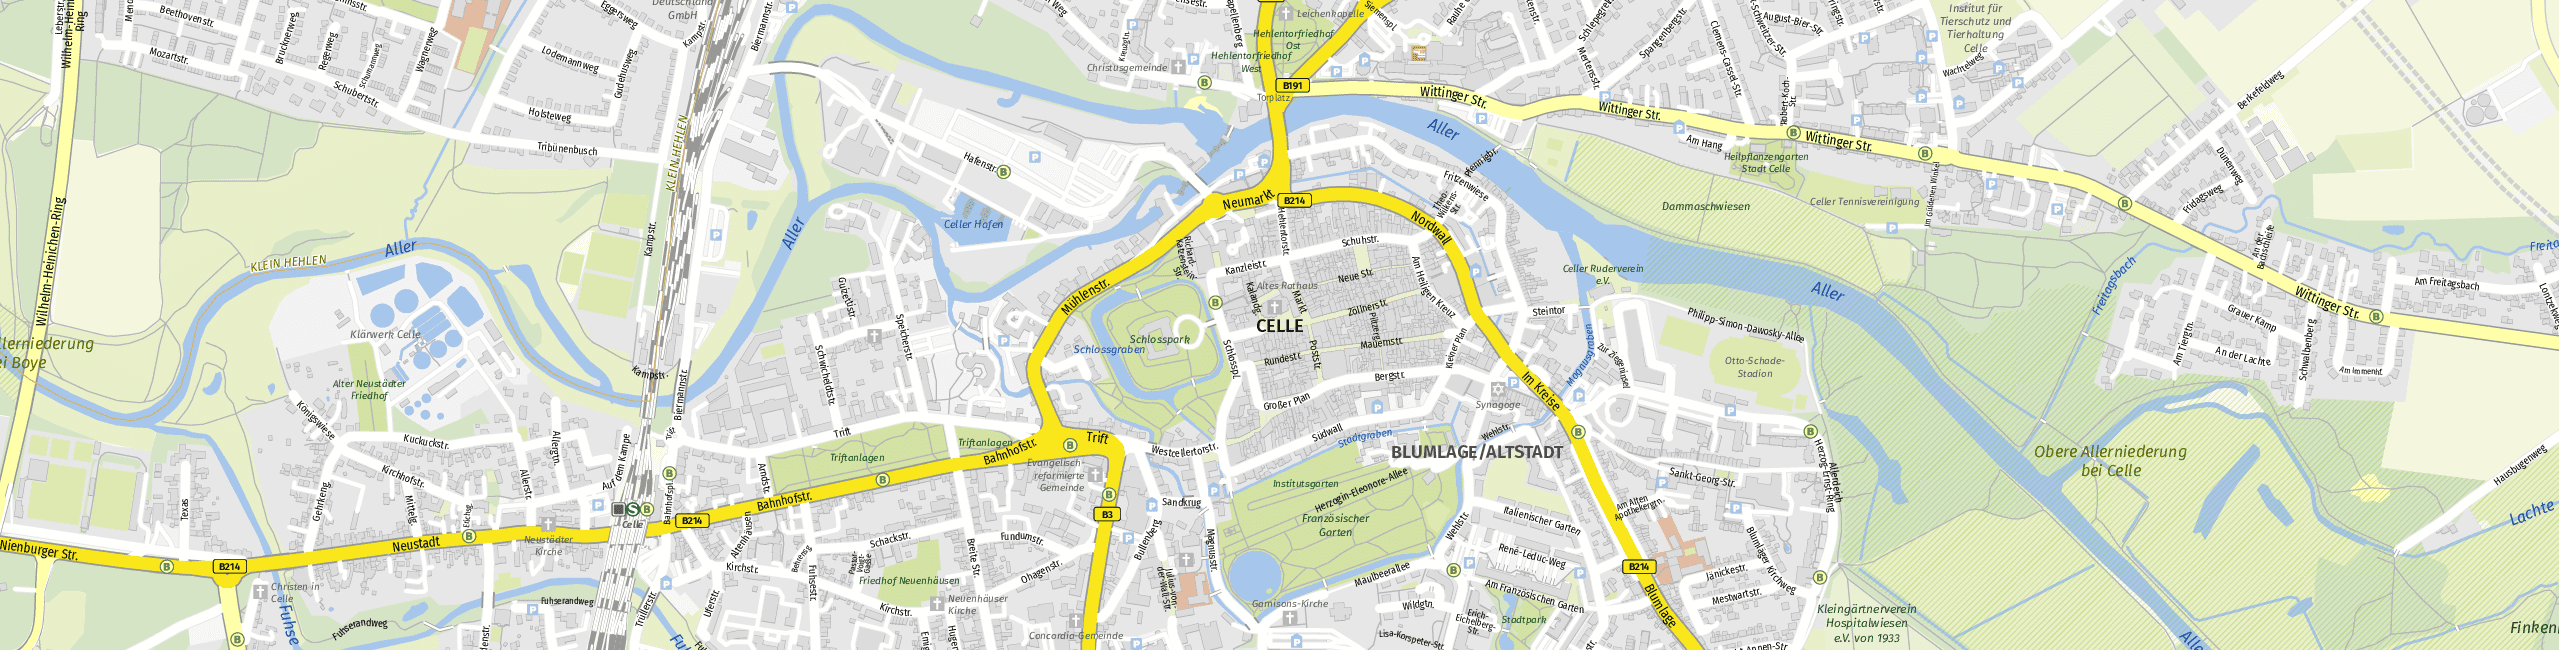 Stadtplan Celle zum Downloaden.